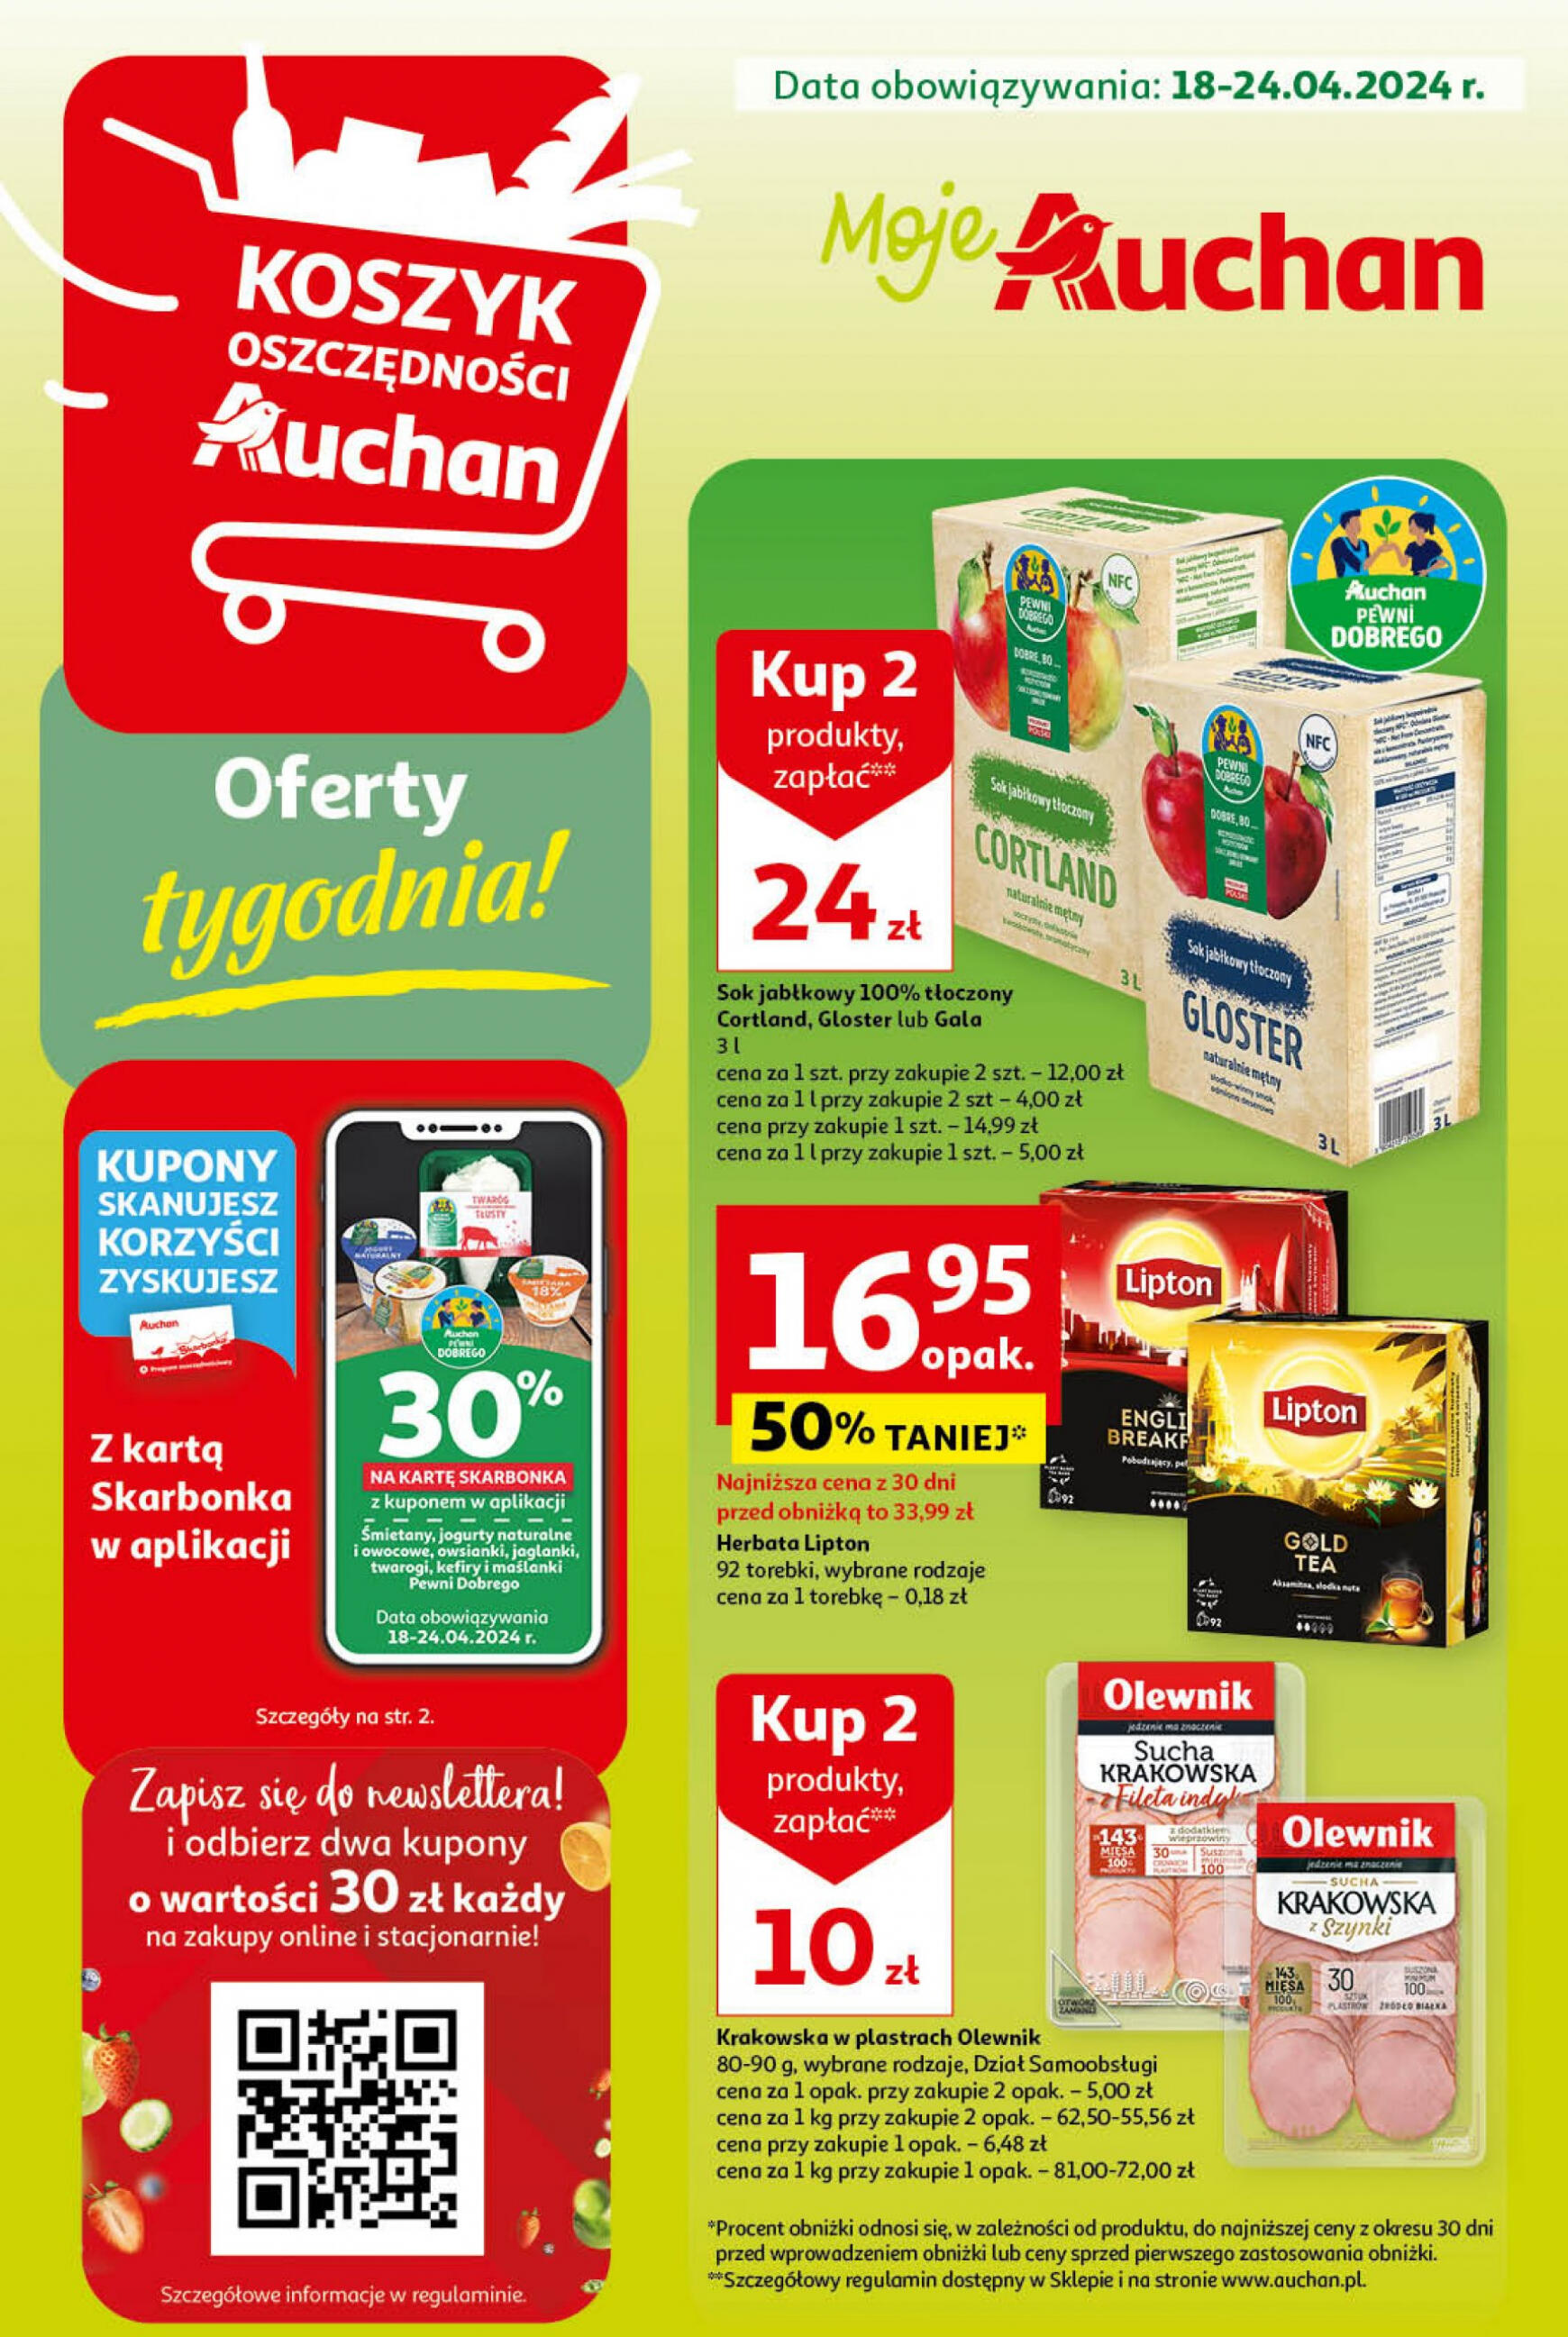 auchan - Moje Auchan - Gazetka Oferty tygodnia! gazetka aktualna ważna od 18.04. - 24.04.